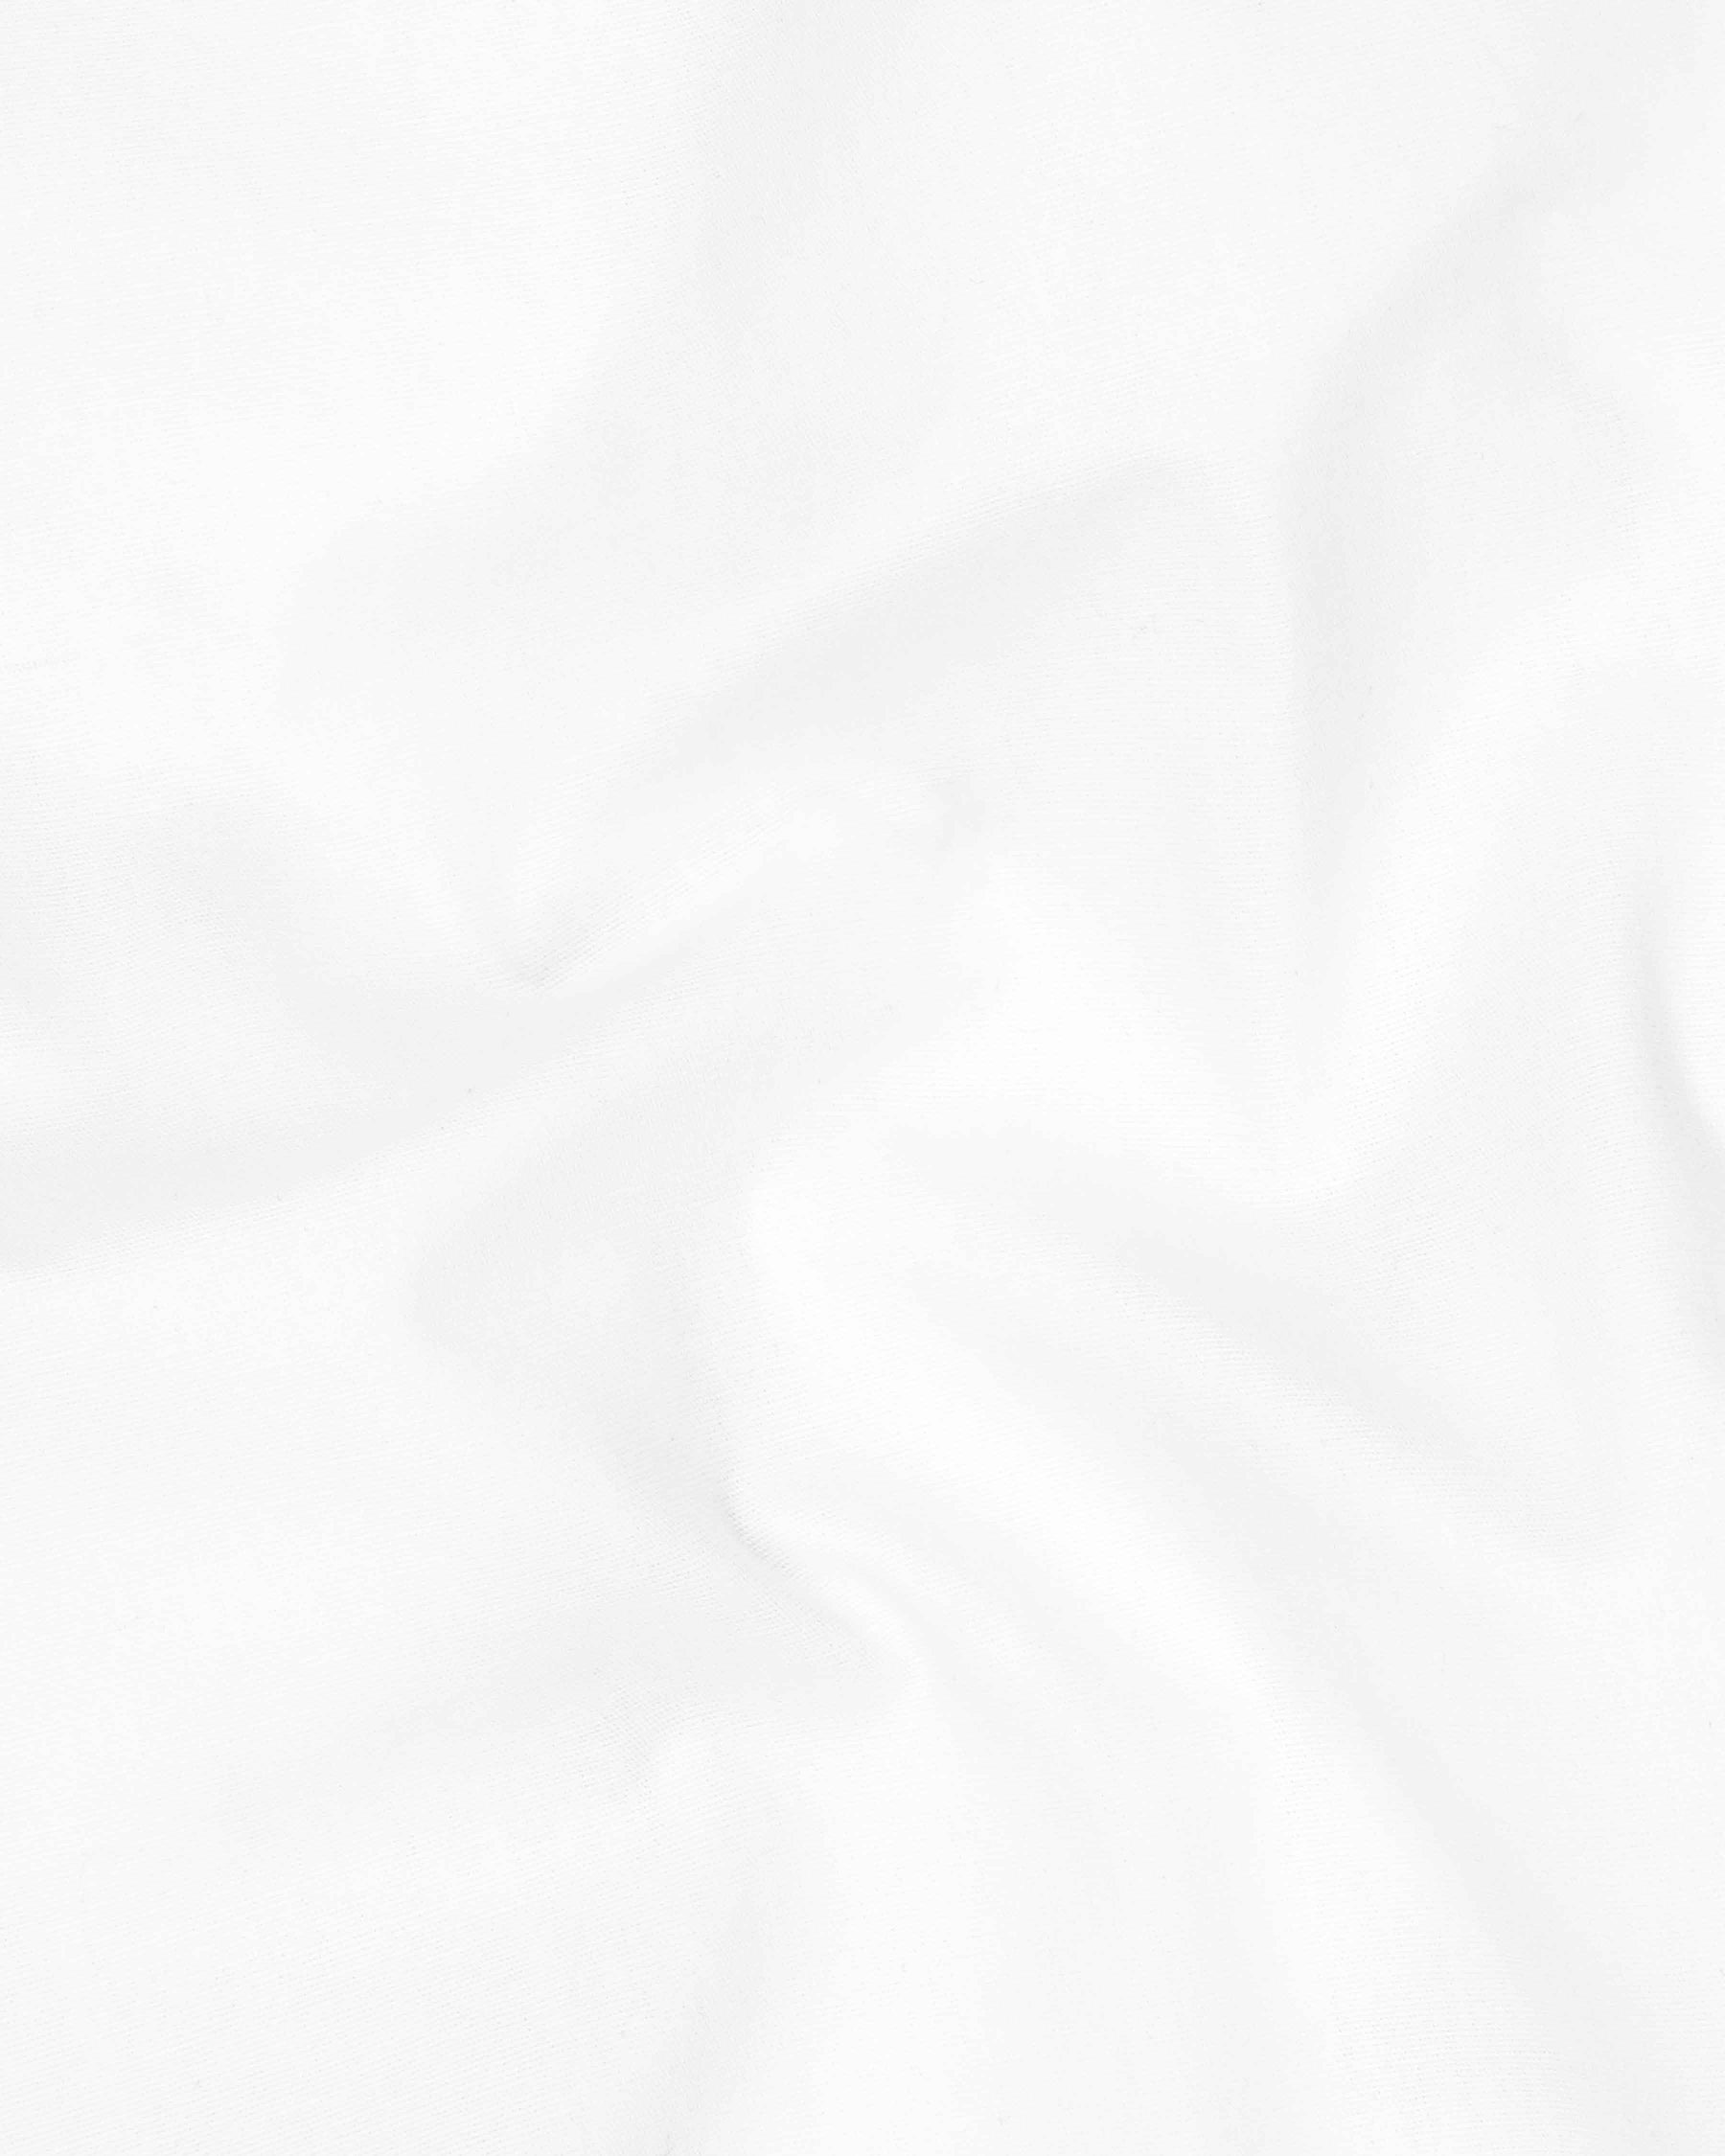 Bright White Cotton Pant T1906-28, T1906-30, T1906-32, T1906-34, T1906-36, T1906-38, T1906-40, T1906-42, T1906-44